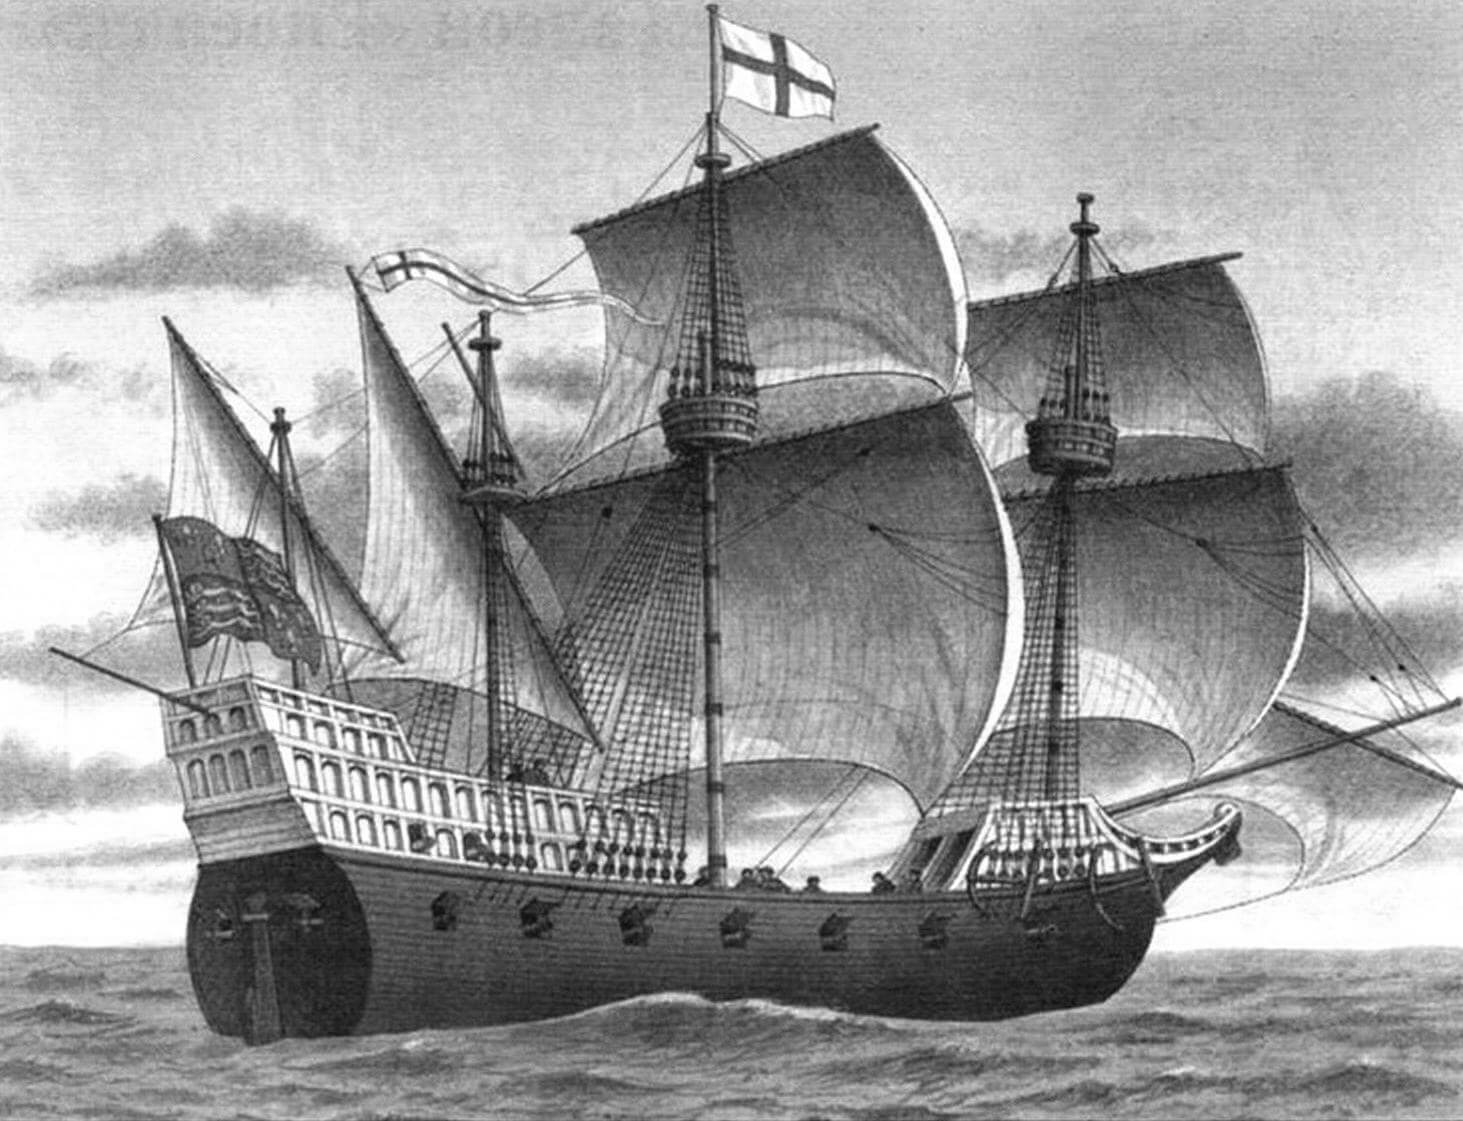 47-пушечный галеон Королевского флота «Элизабет Бонавенчур» (Elizabeth Bonaventure) - флагманский корабль сэра Френсиса Дрейка во время экспедиции 1585- 1586 годов и атаки Кадиса в 1587 году